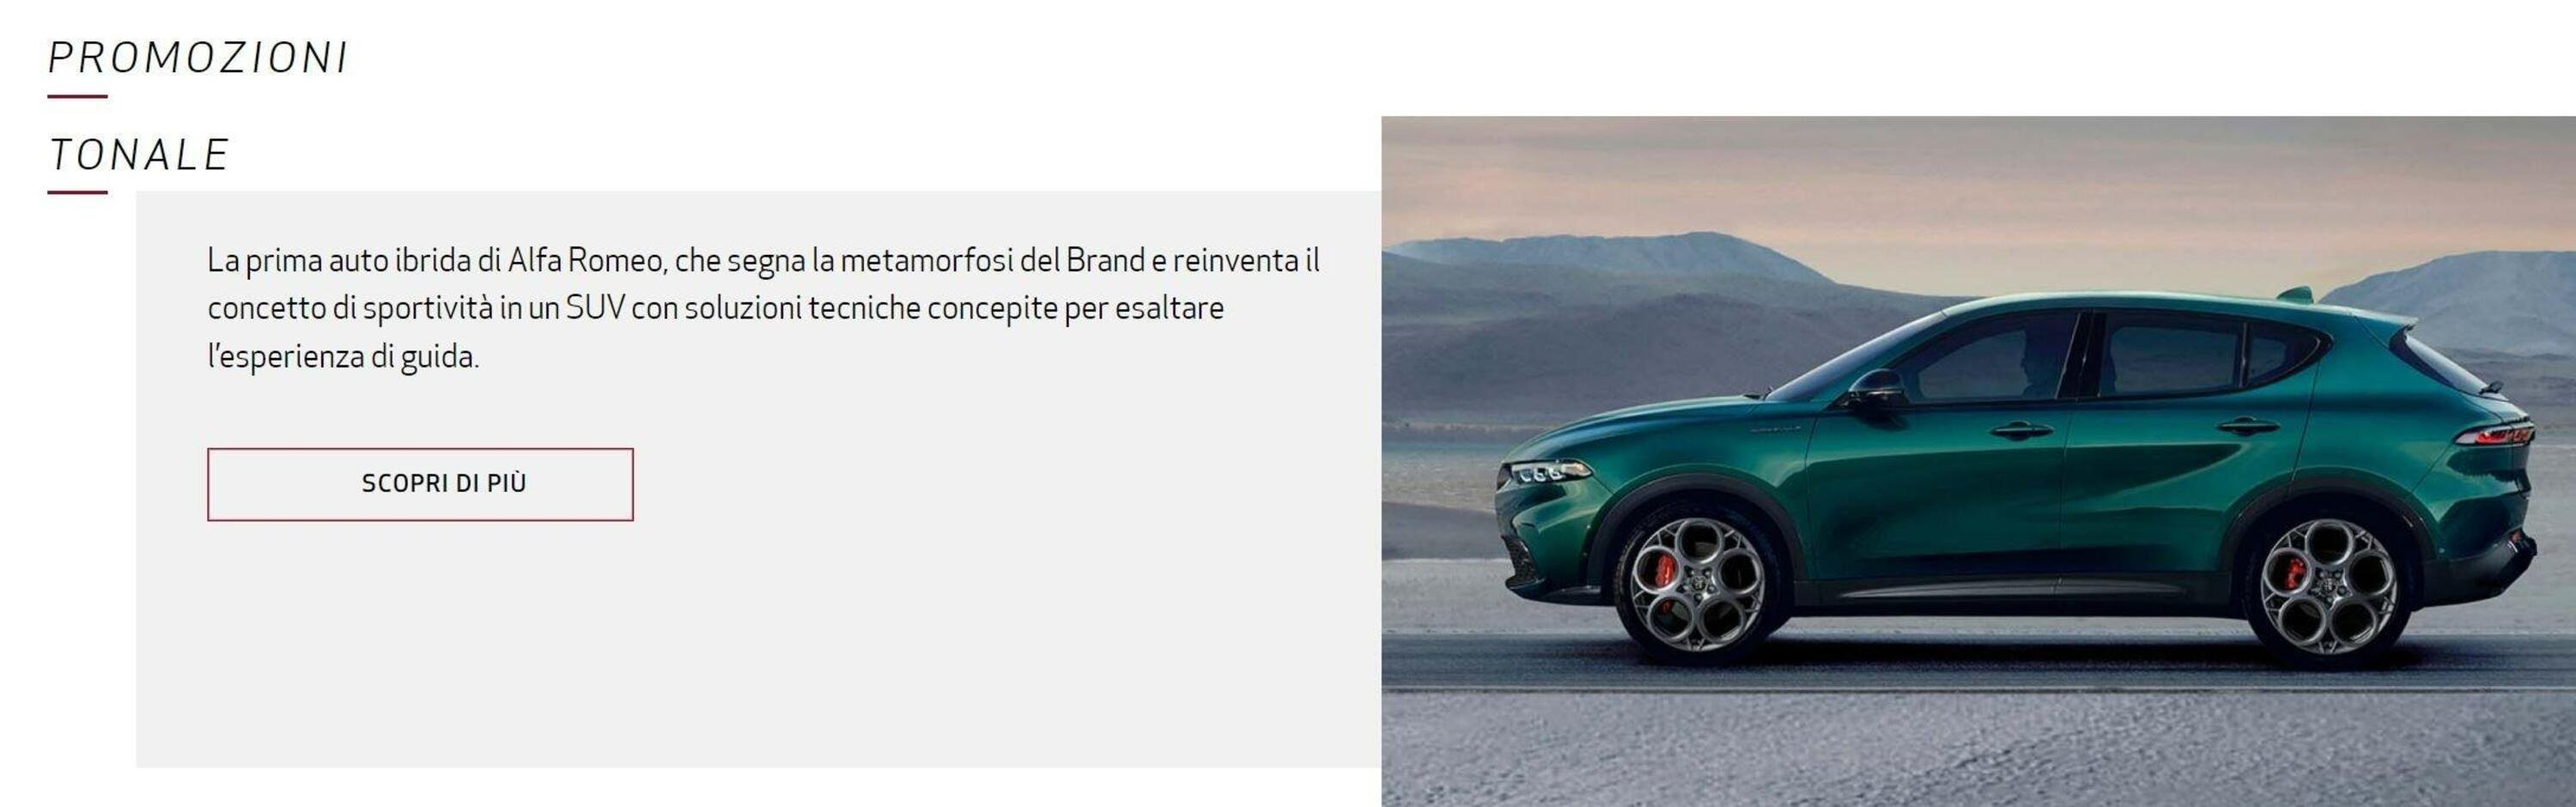 Ecco quanto costa oggi Alfa Romeo Tonale, con la promozione Stellantis [389 &euro;/mese]